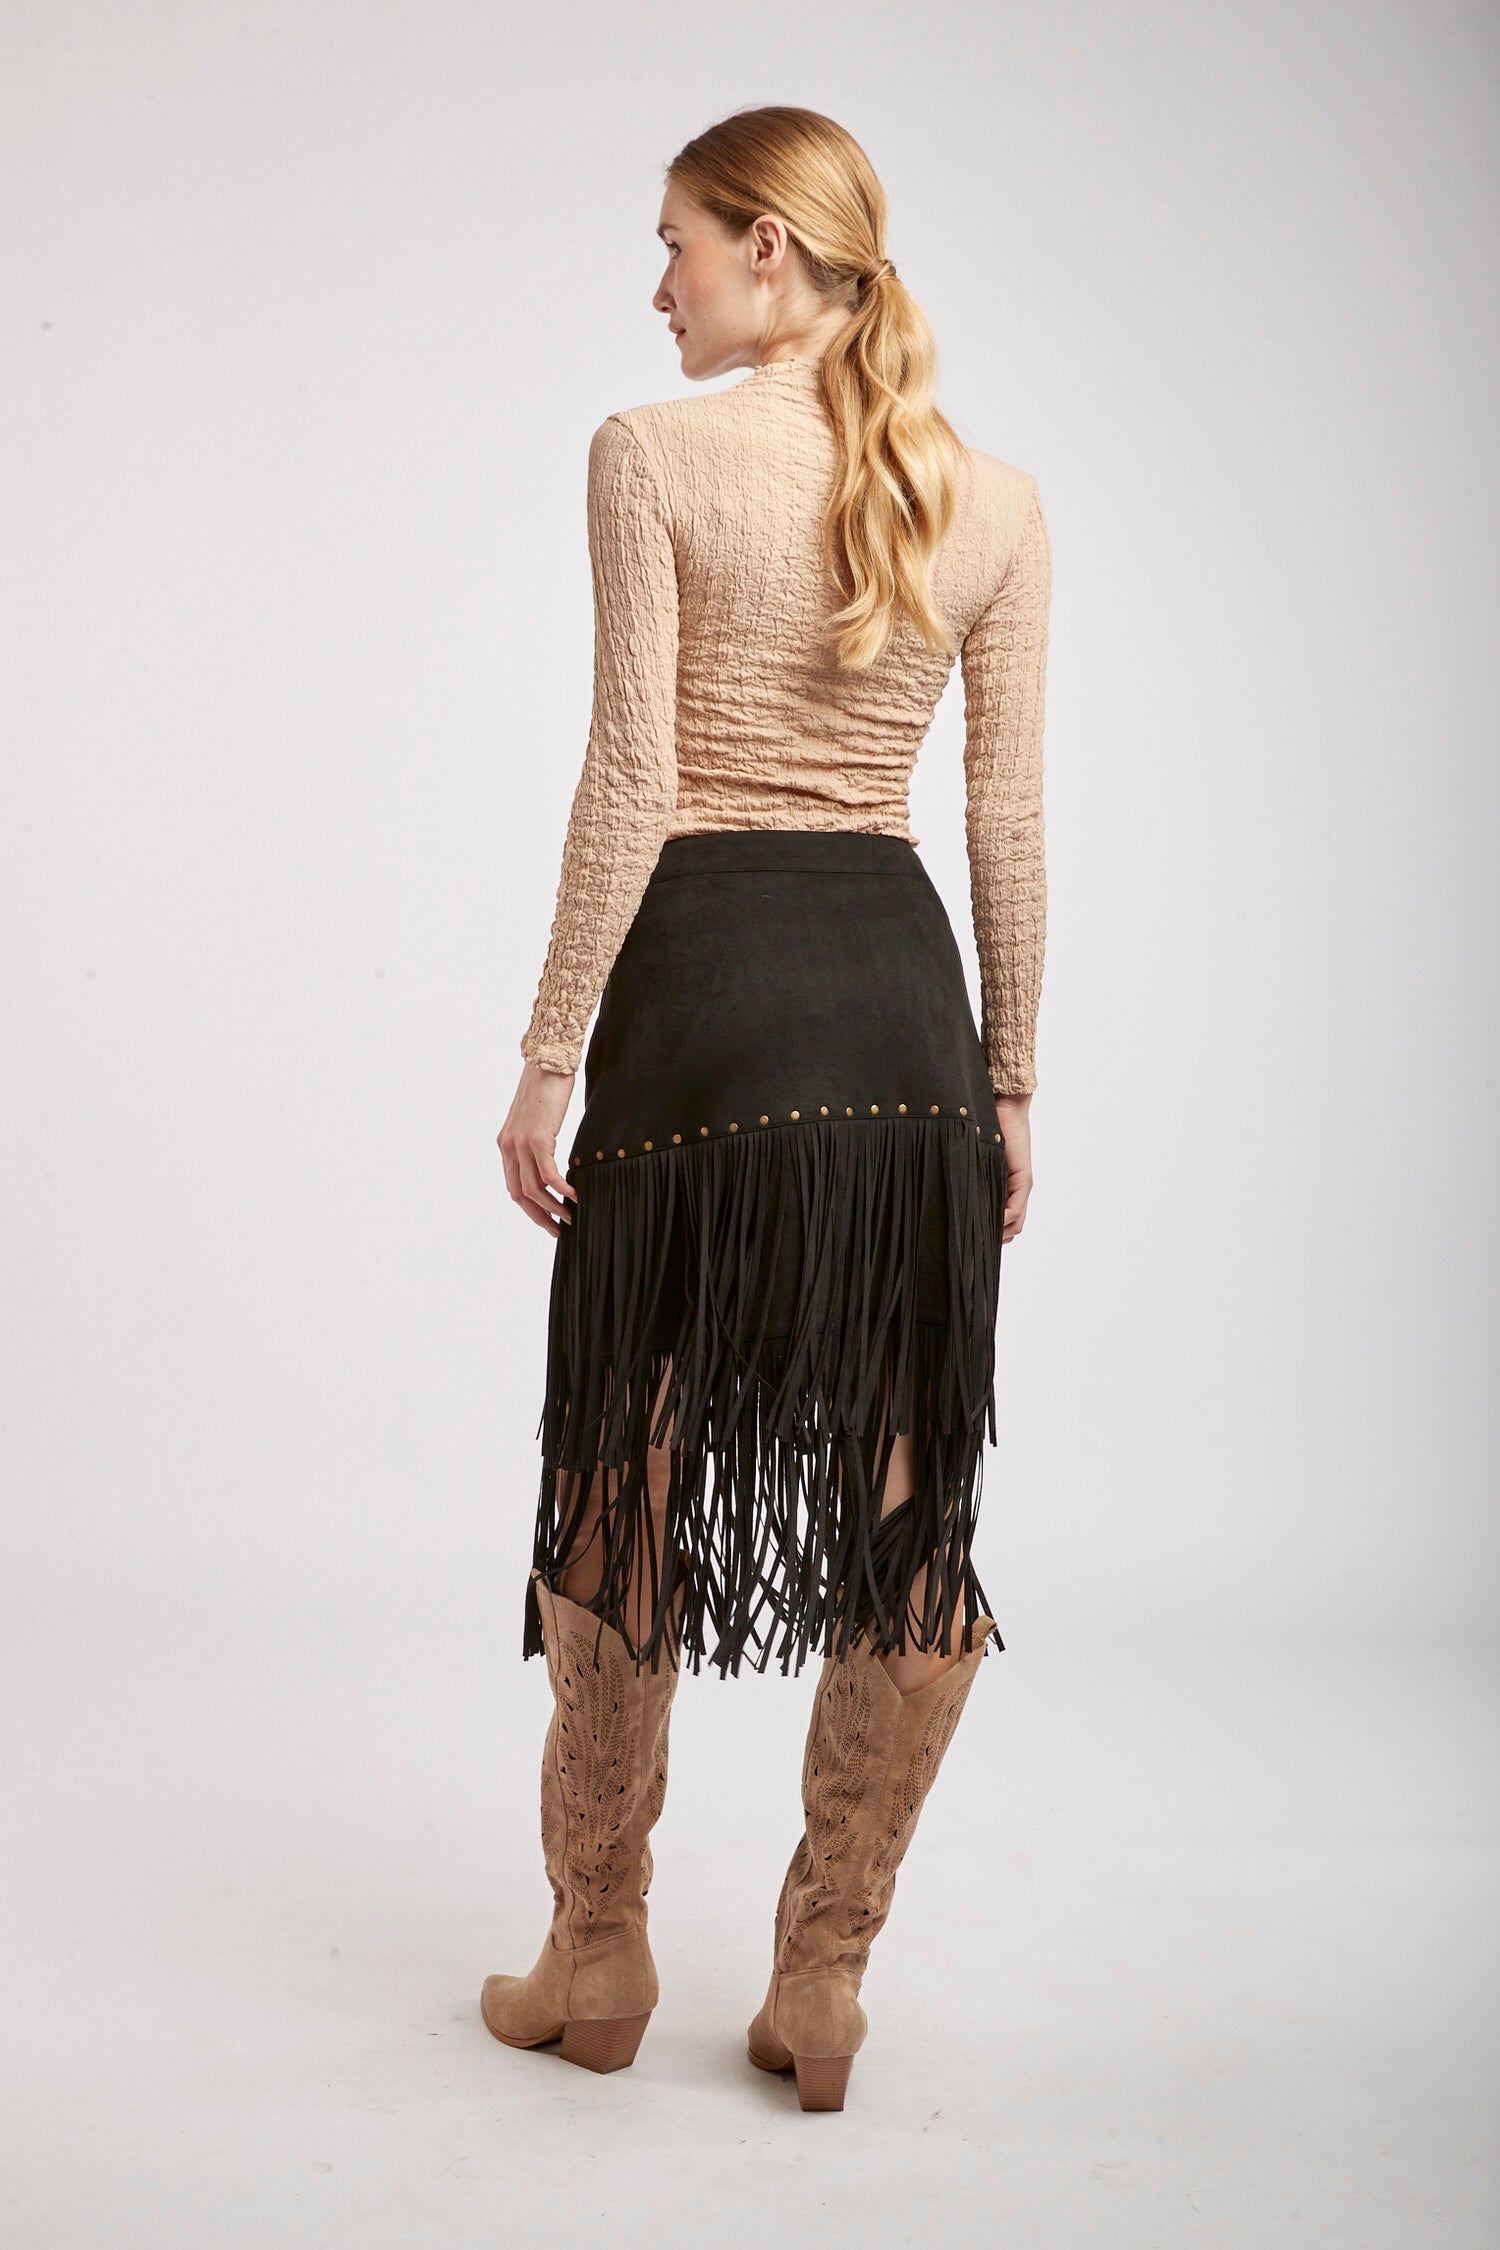 Swedish fringe skirt -Moka